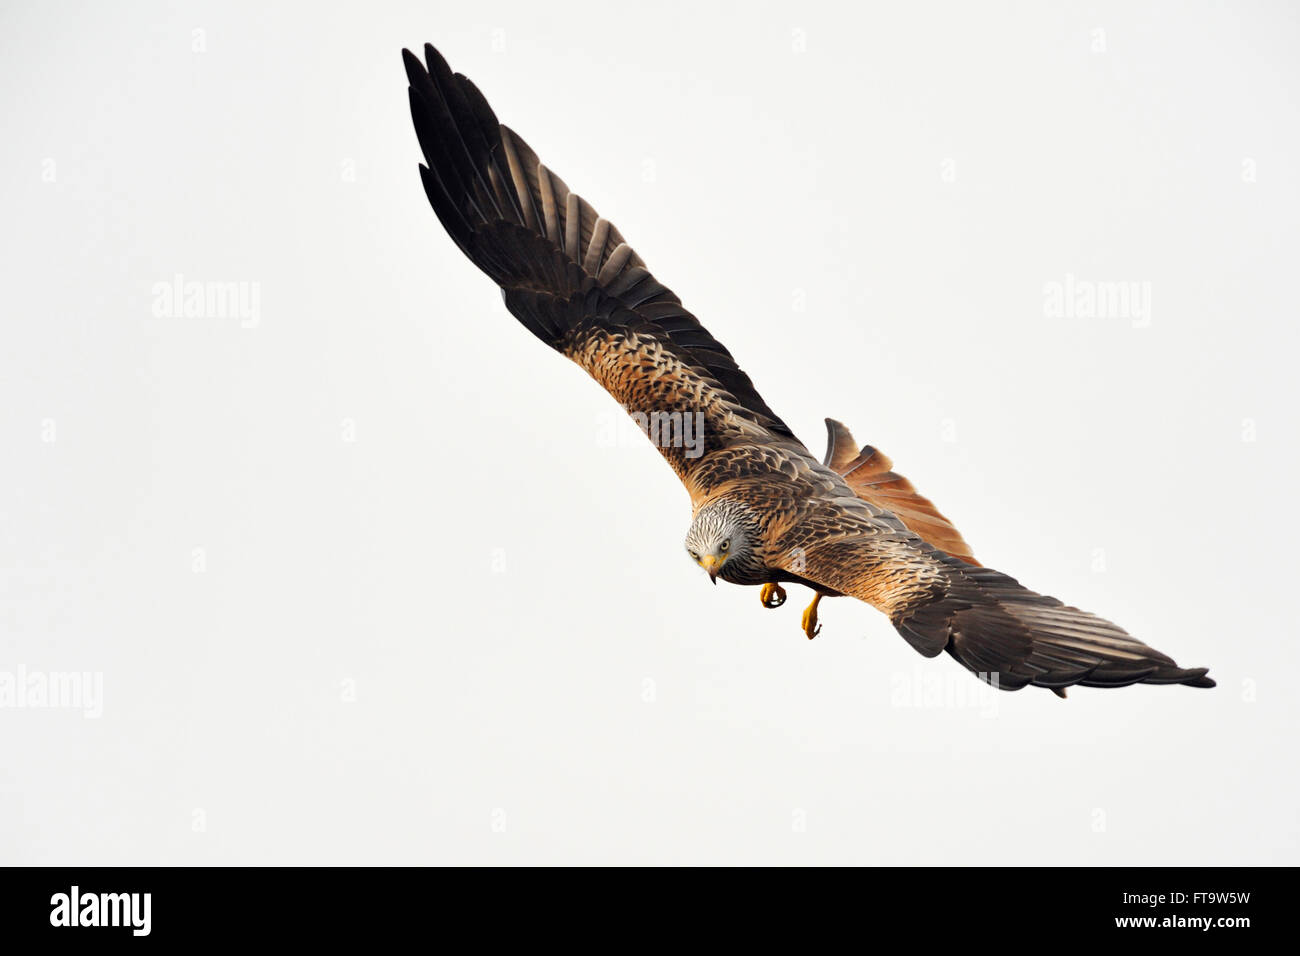 Red Kite / Rotmilan ( Milvus milvus ), adult bird of prey, in spectacular hunting flight against clean sky. Stock Photo